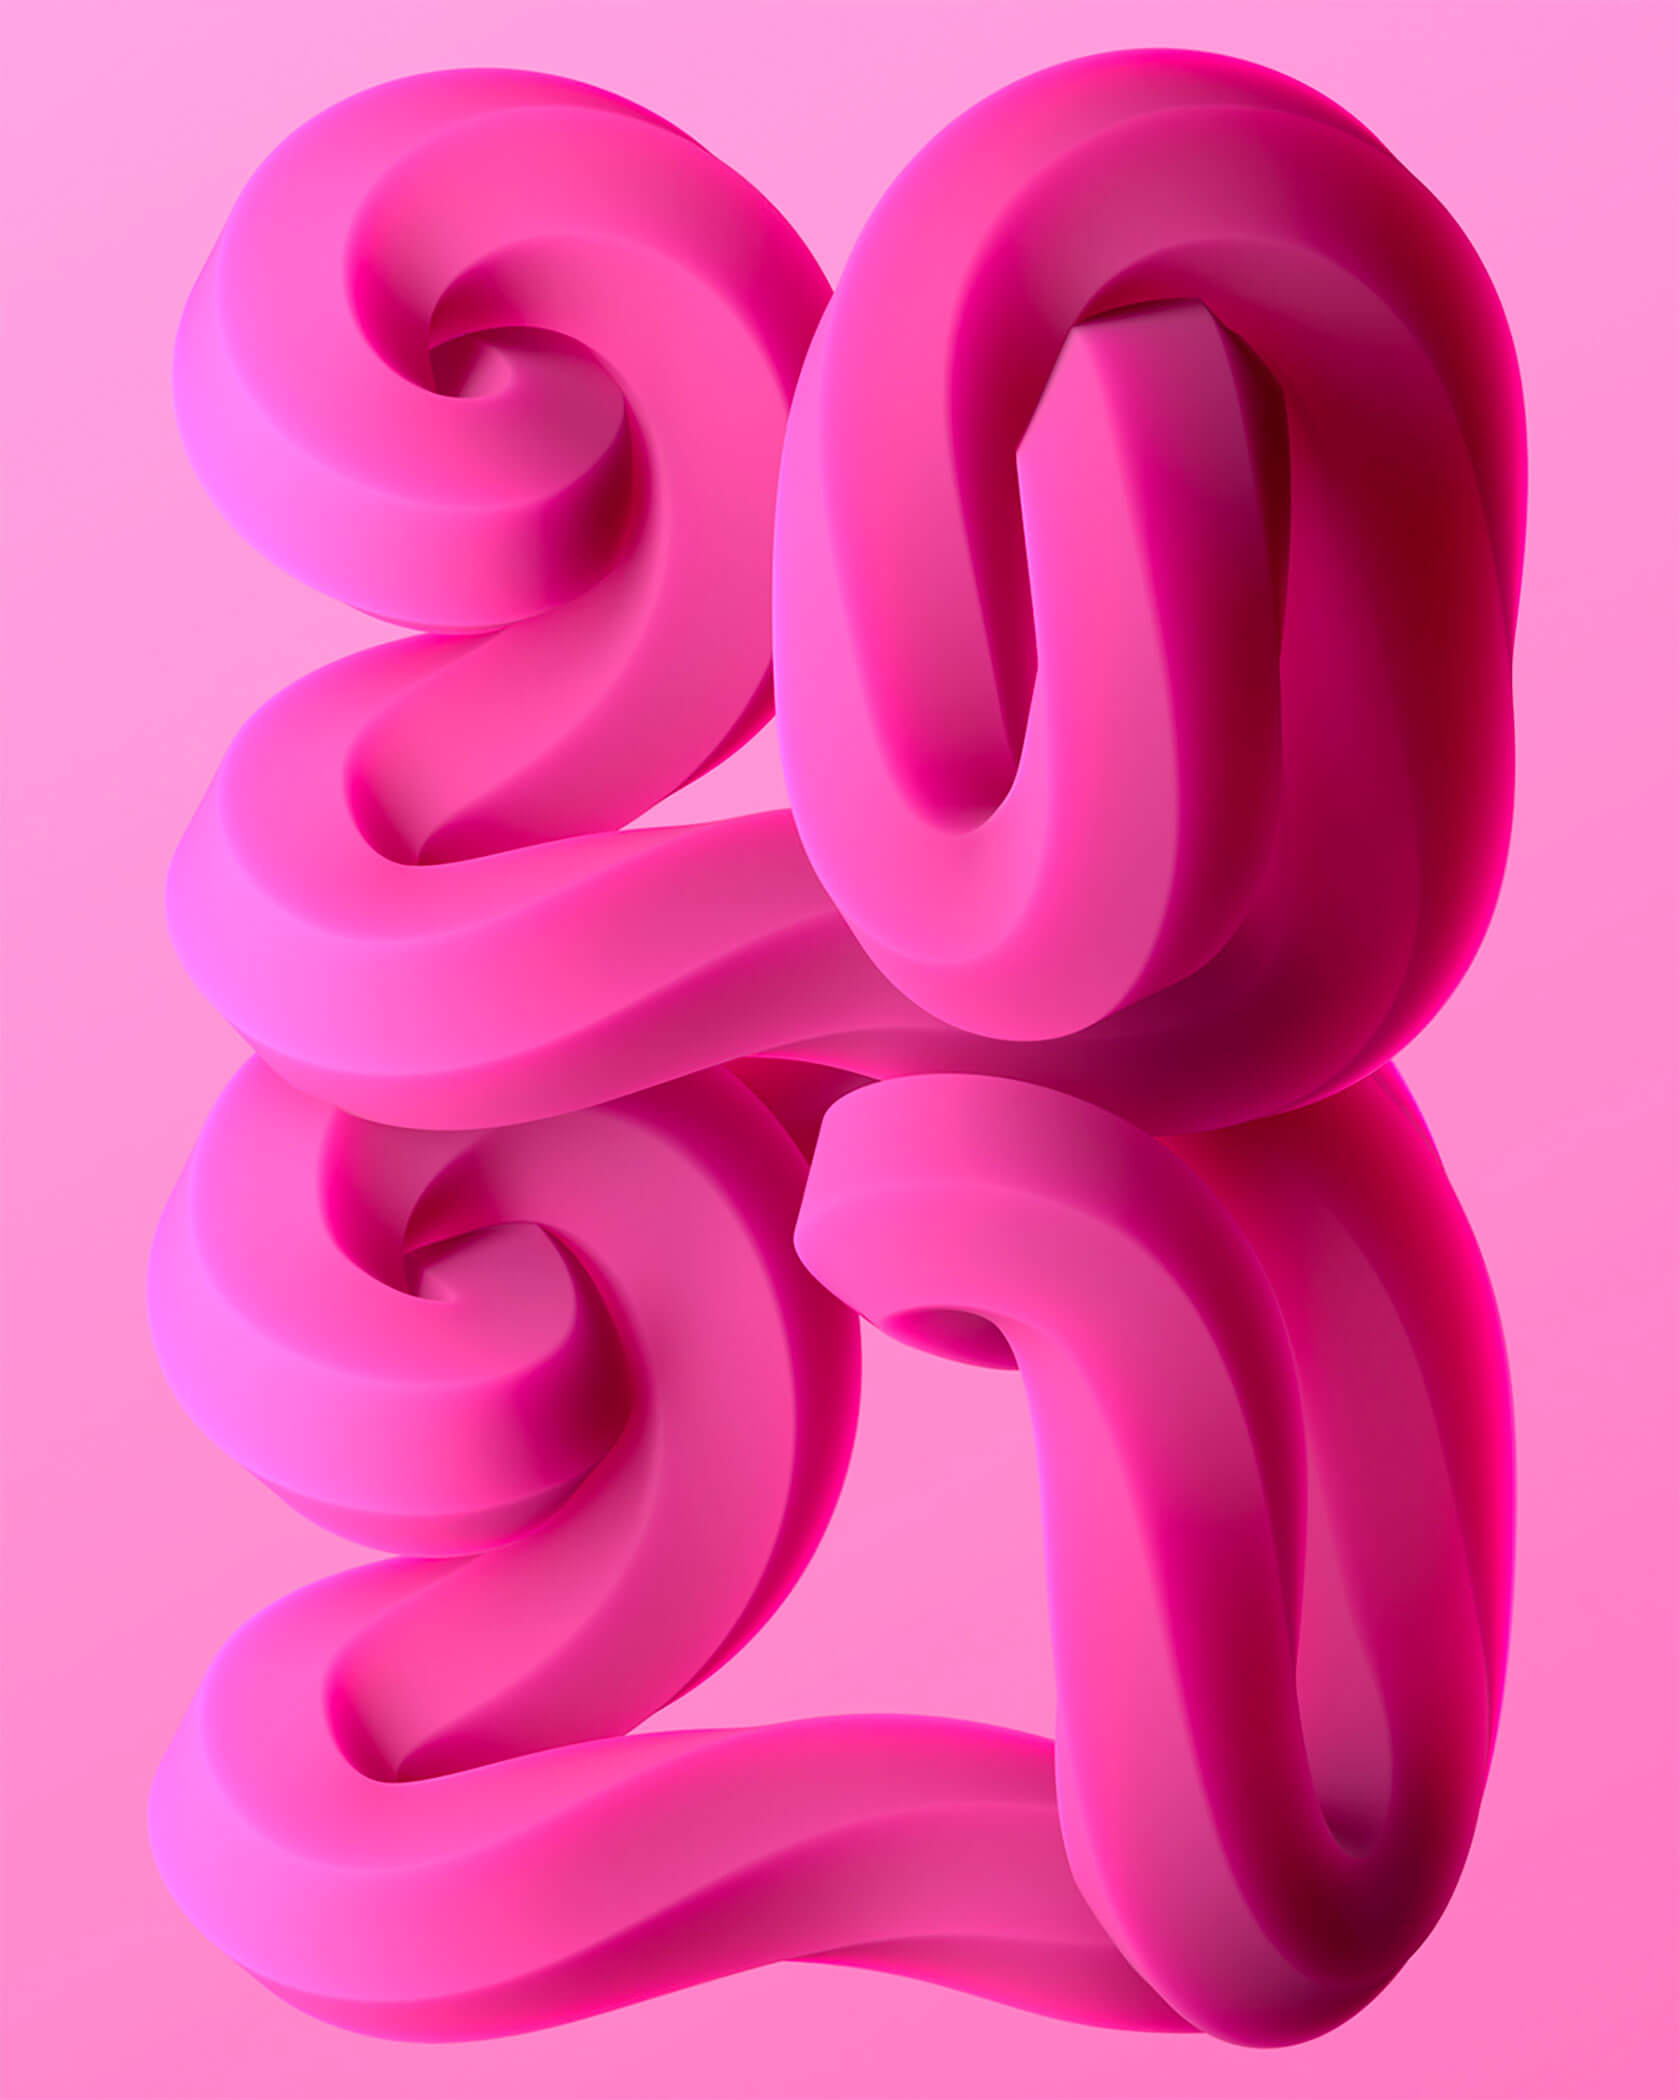 使用扭曲和旋转的3D形状设计充满活力的3D字效,创意的3D字体设计